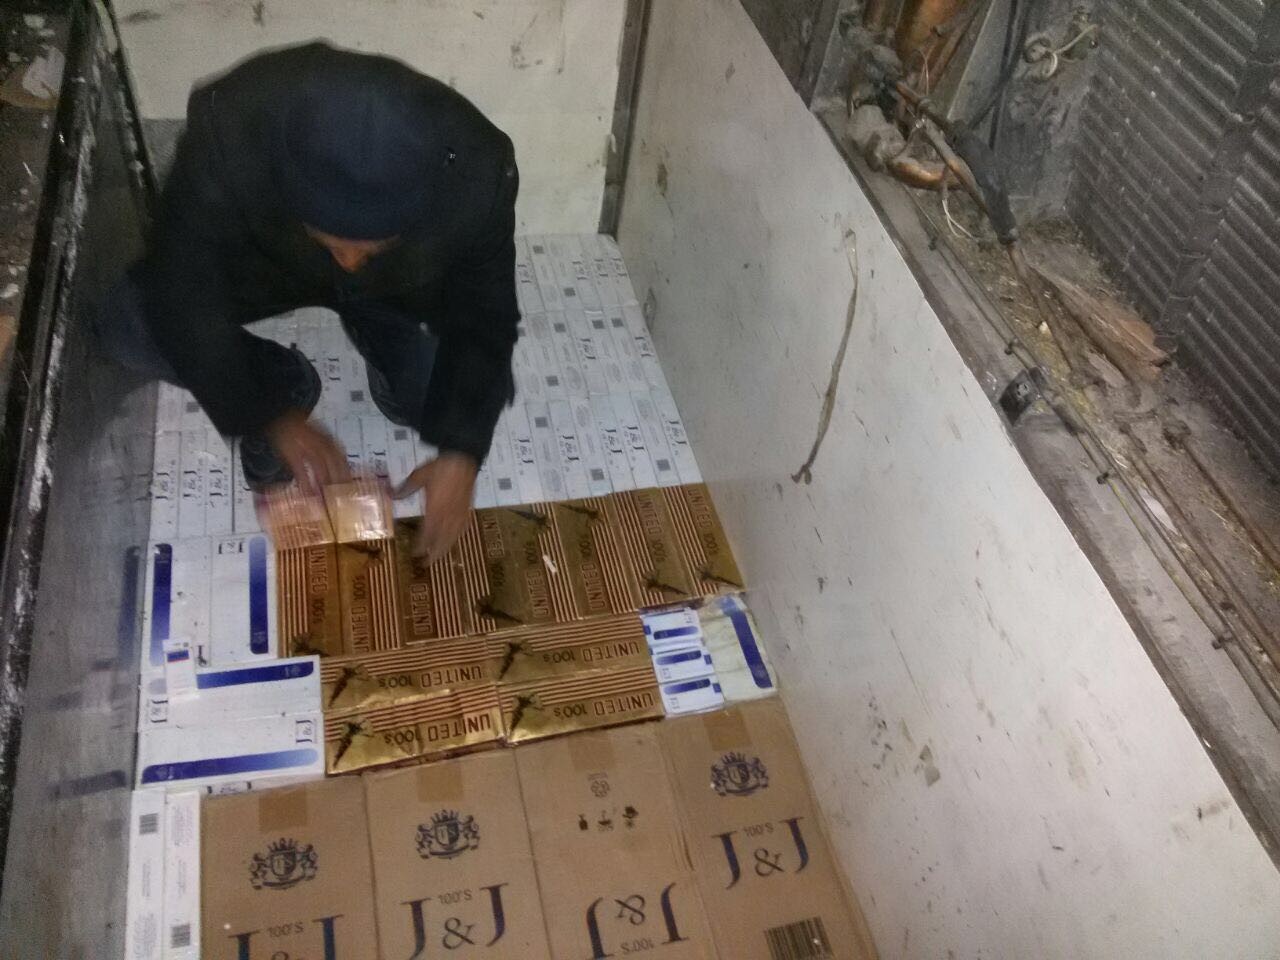 TIR dorsesine zulalanmış 53 bin paket kaçak sigara yakalandı